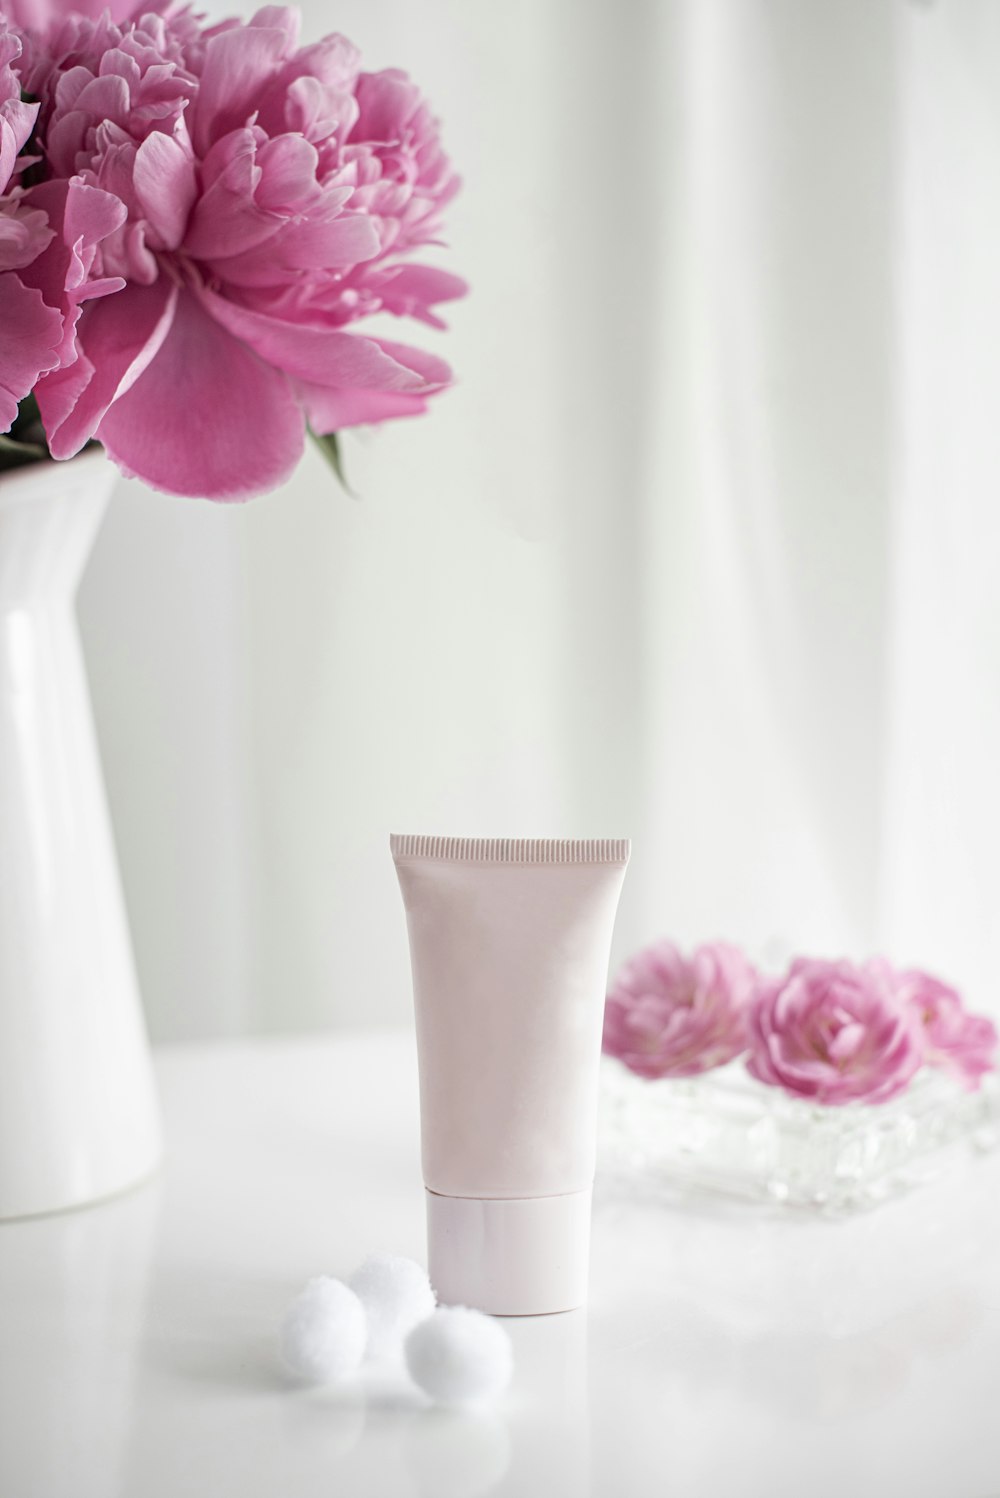 흰색 세라믹 꽃병에 핑크 꽃